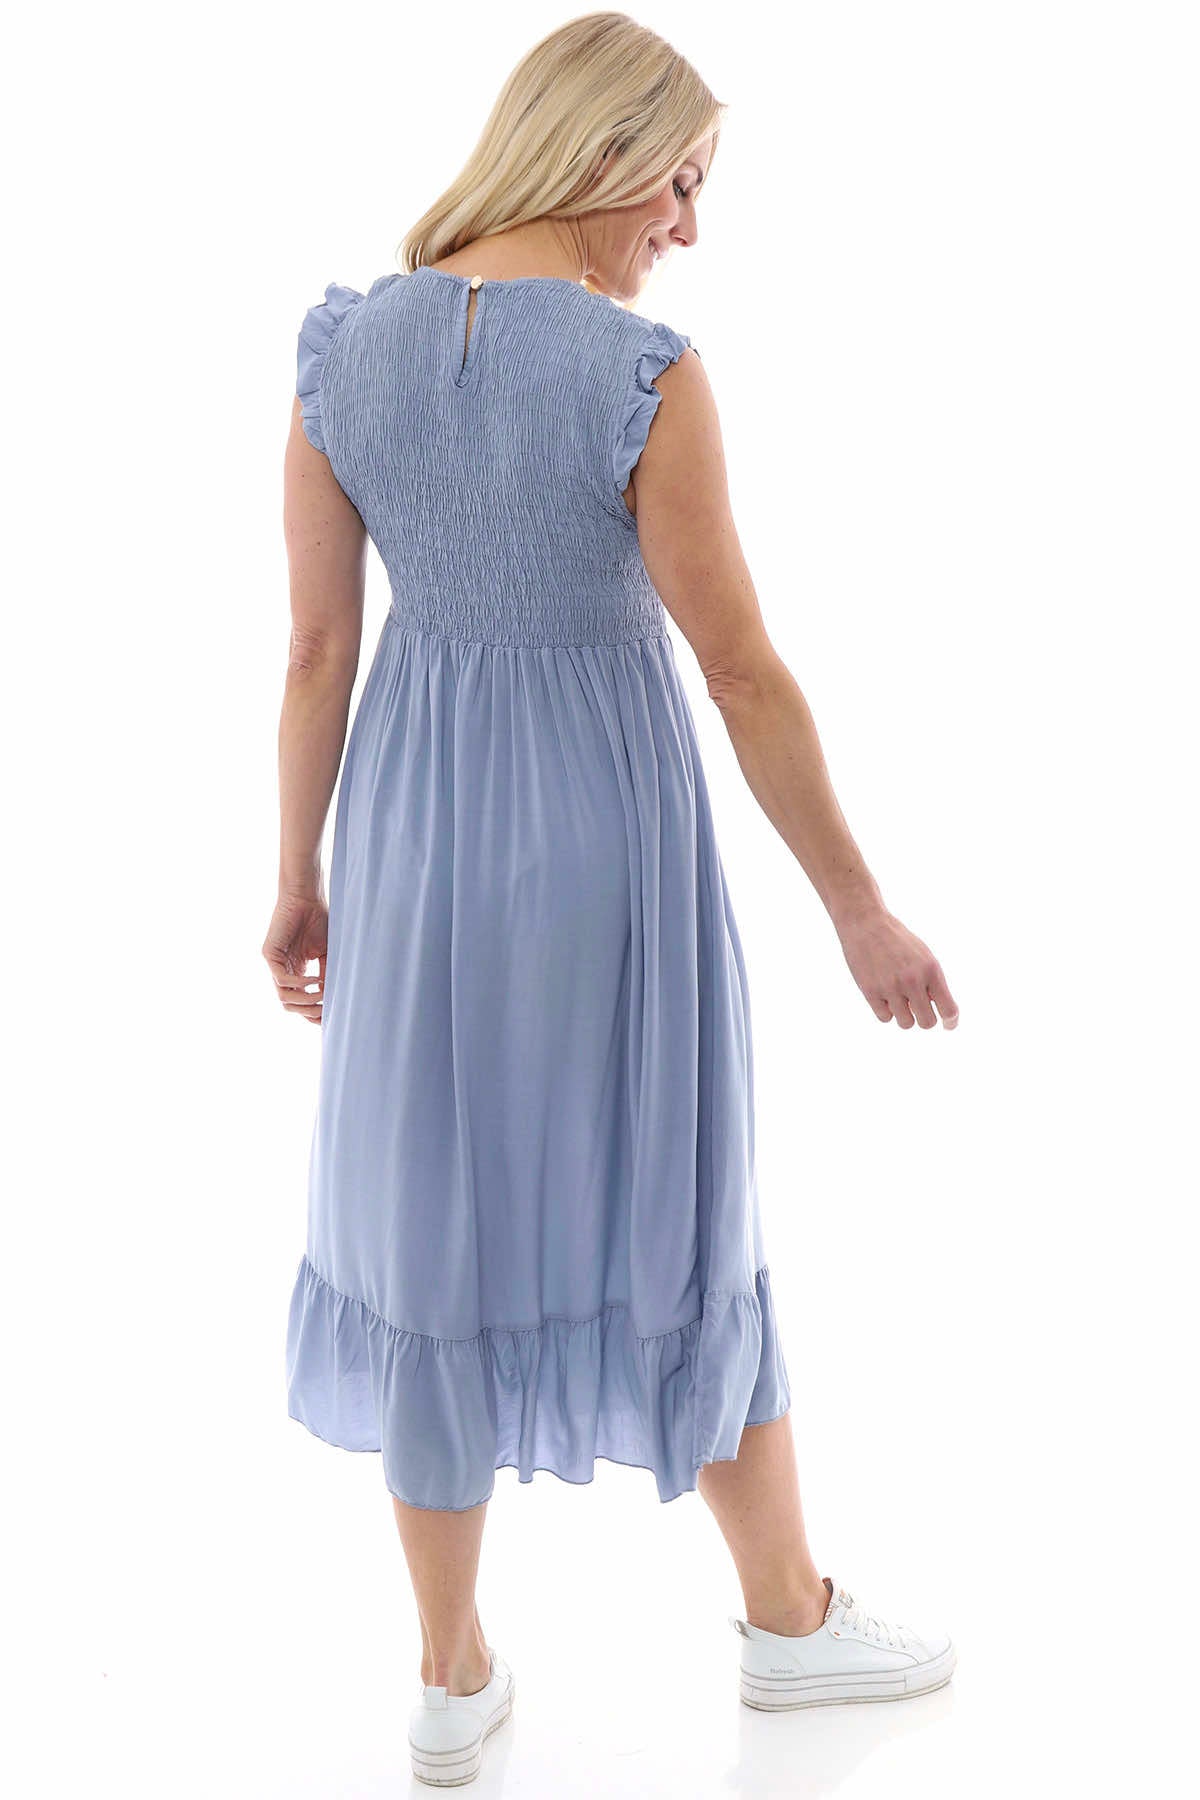 Juniper Plain Sleeveless Dress Blue Grey